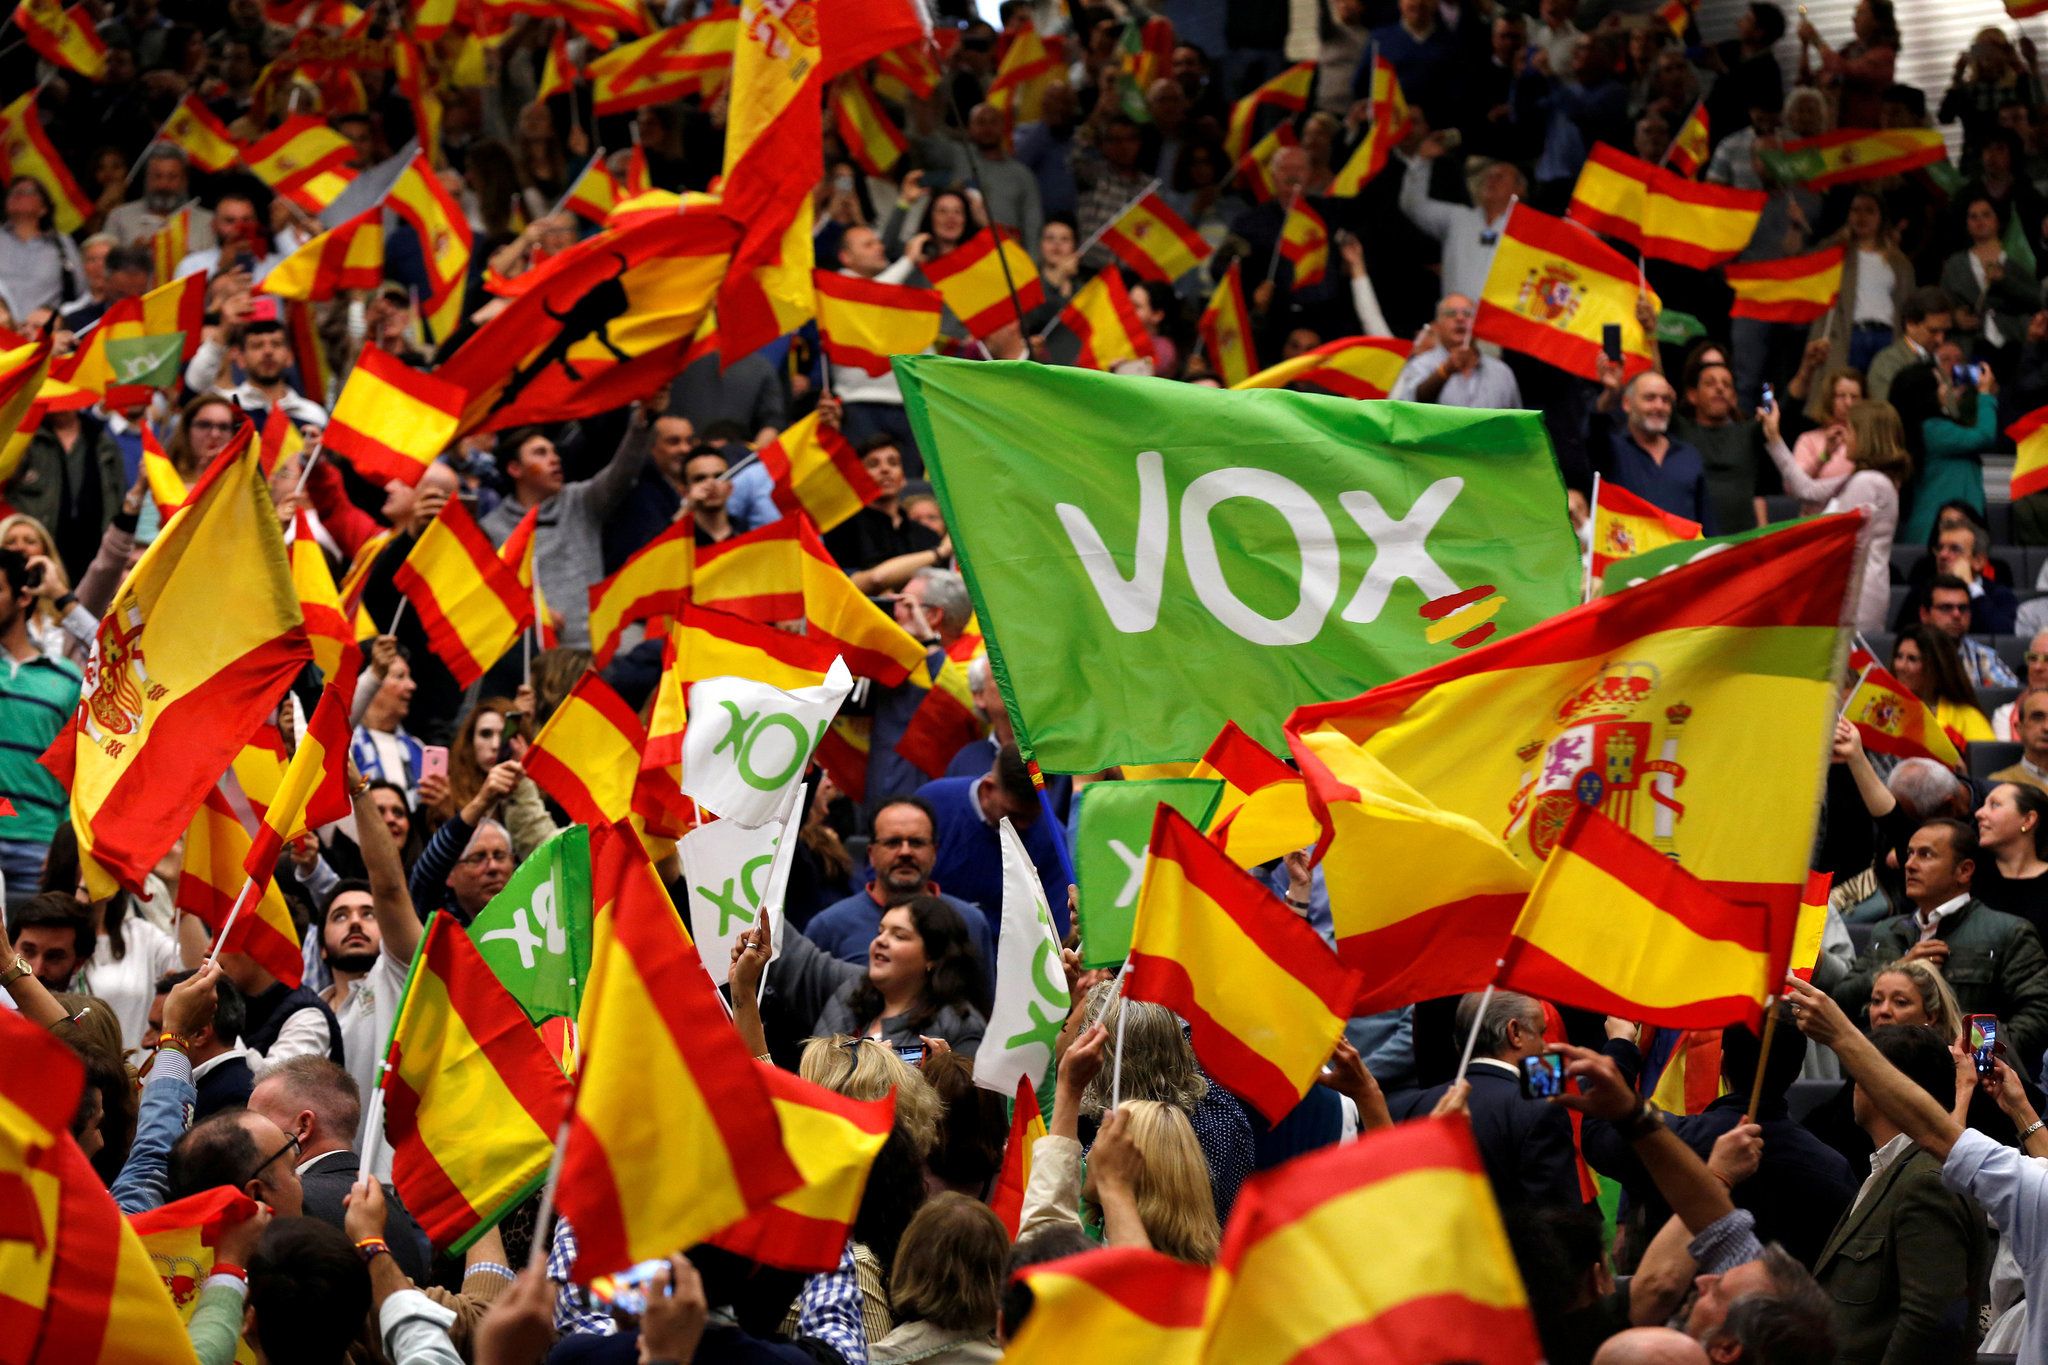 Grupo Vox Madrid en Telegram / VOX MADRID TGM